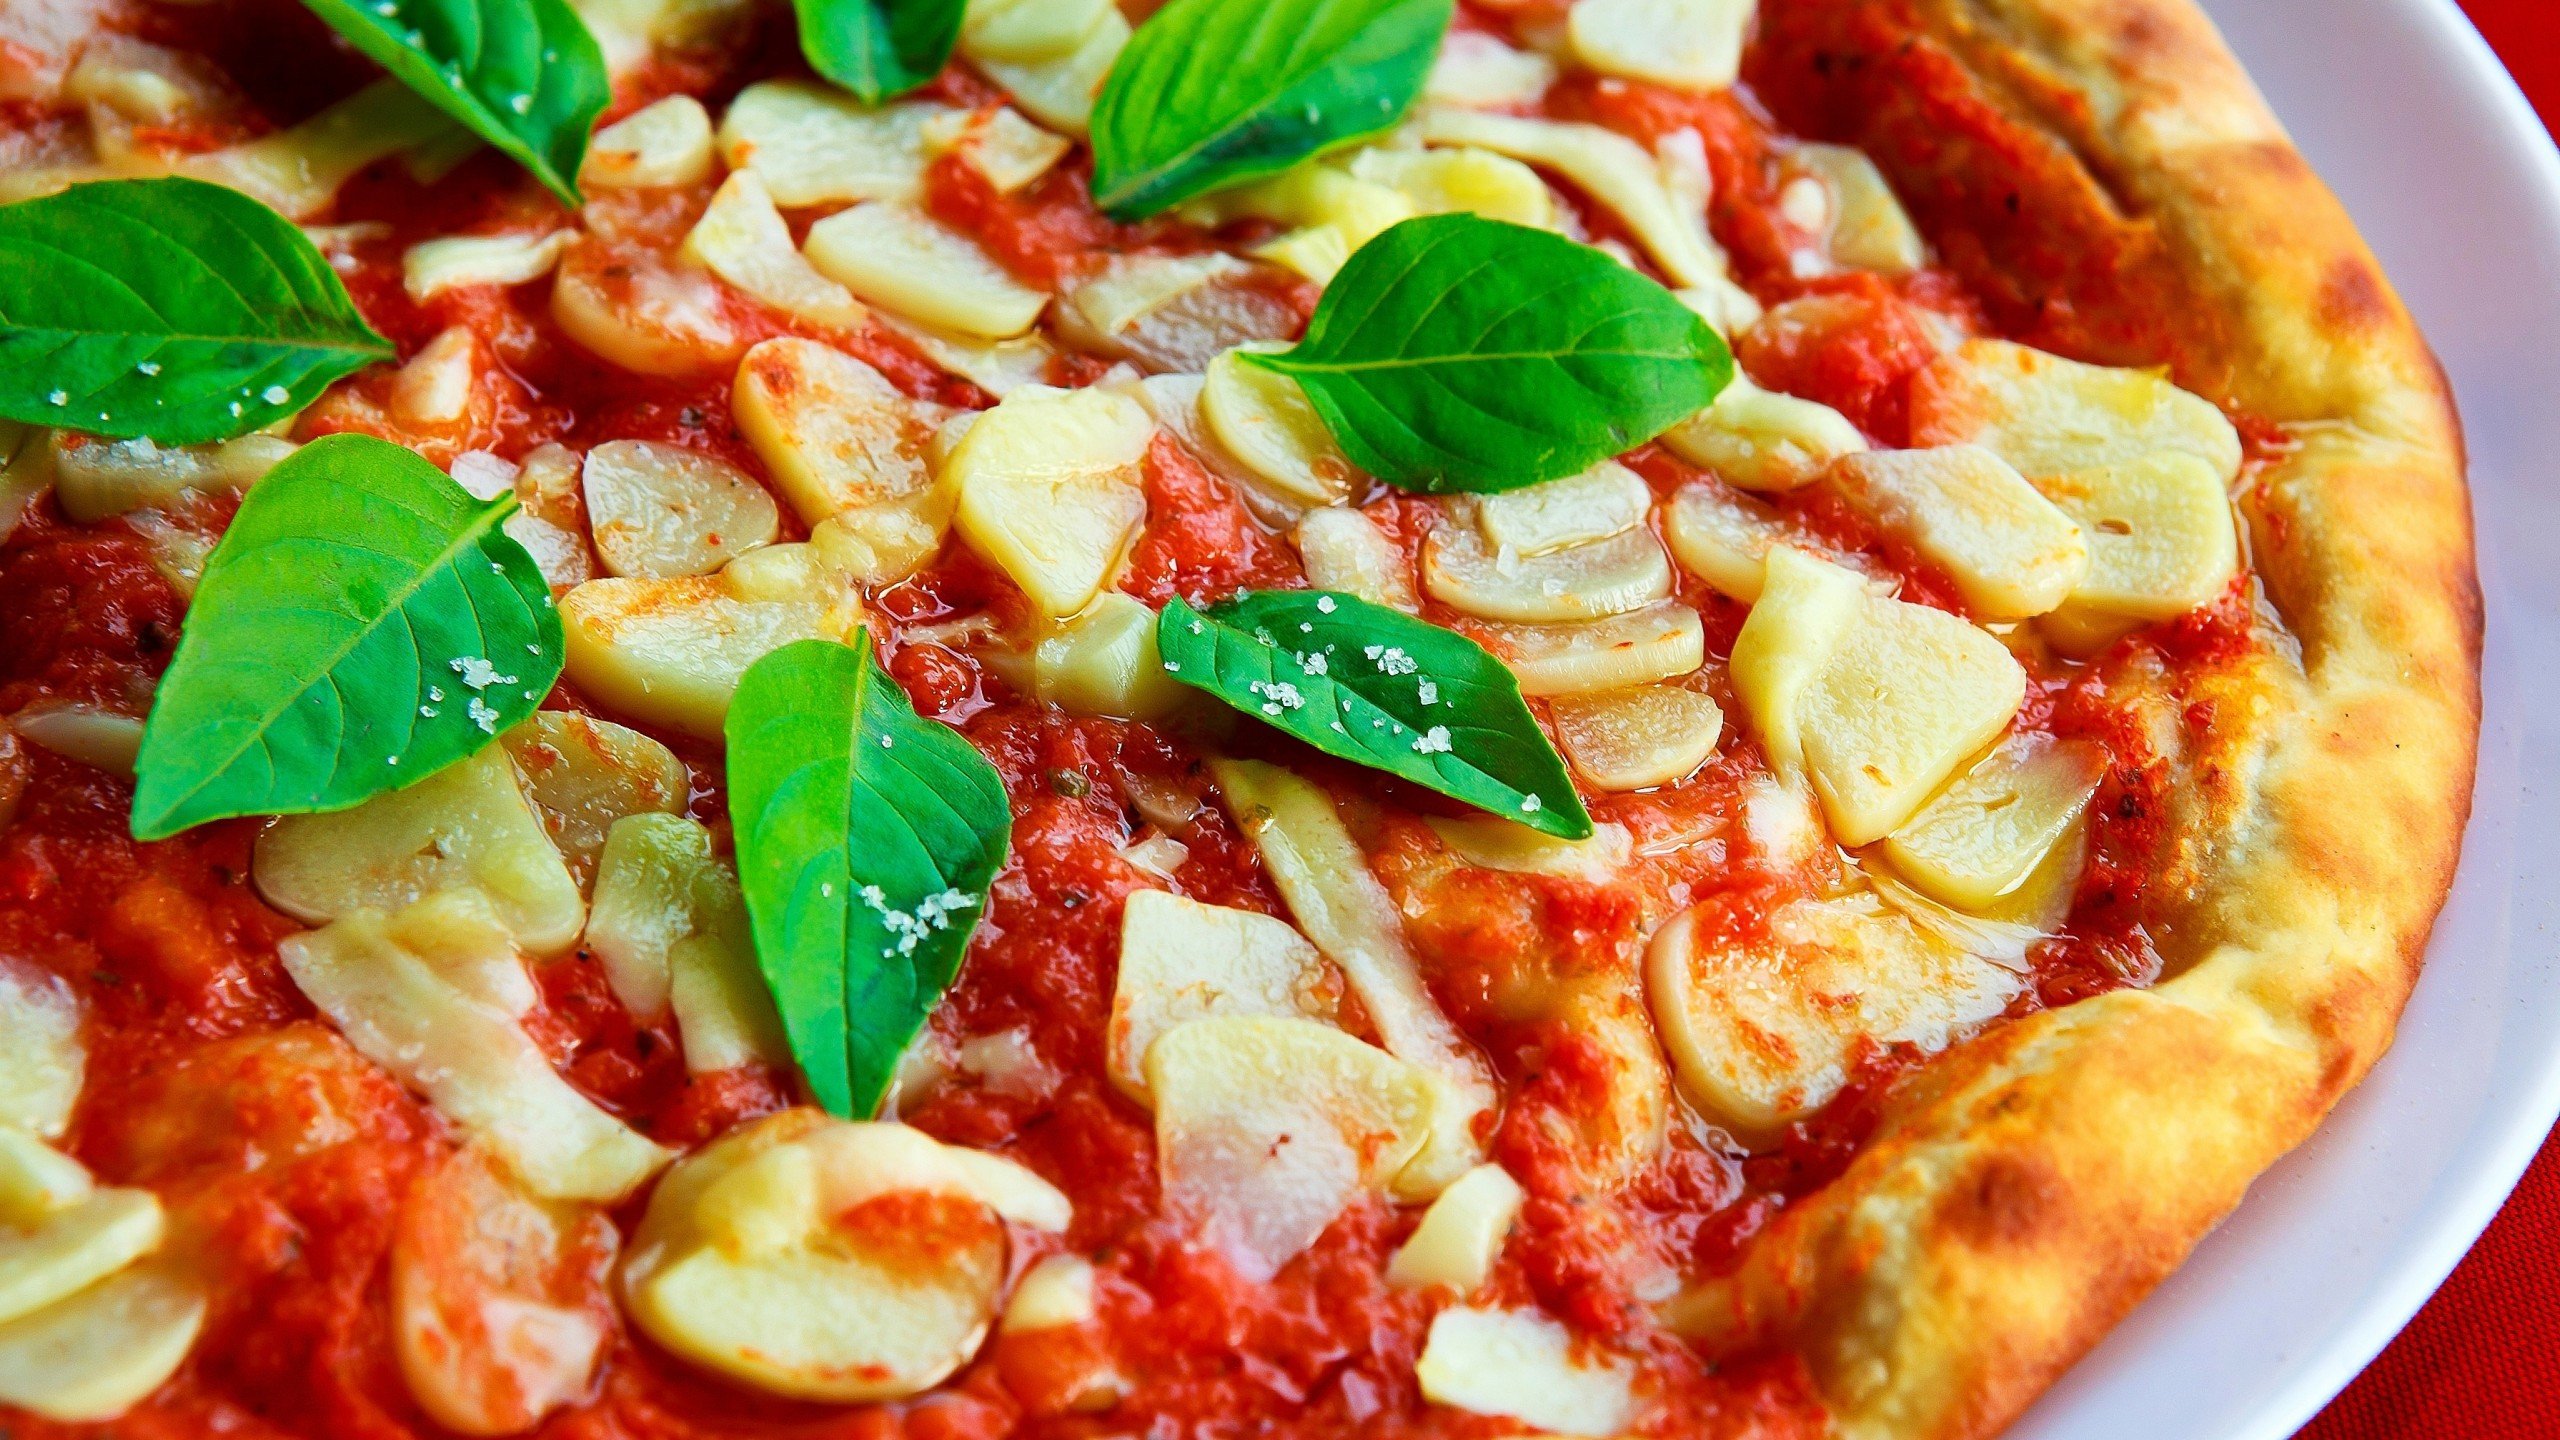 عکس بسیار زیبا و دیدنی از پیتزا با سس گوجه فرنگی روی آن 